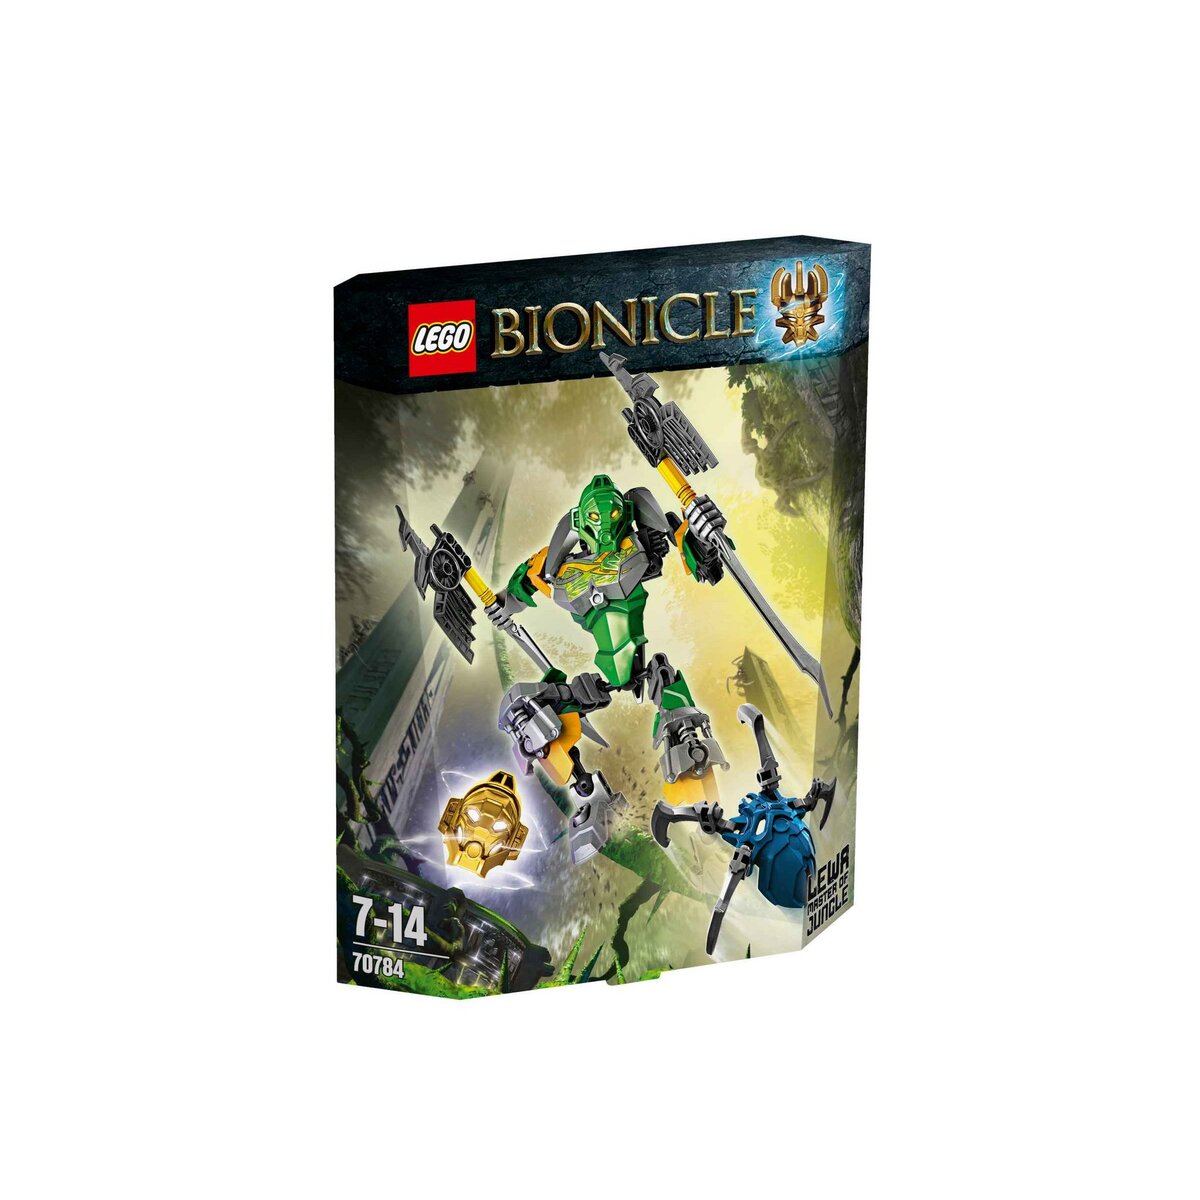 LEGO Bionicle 70784